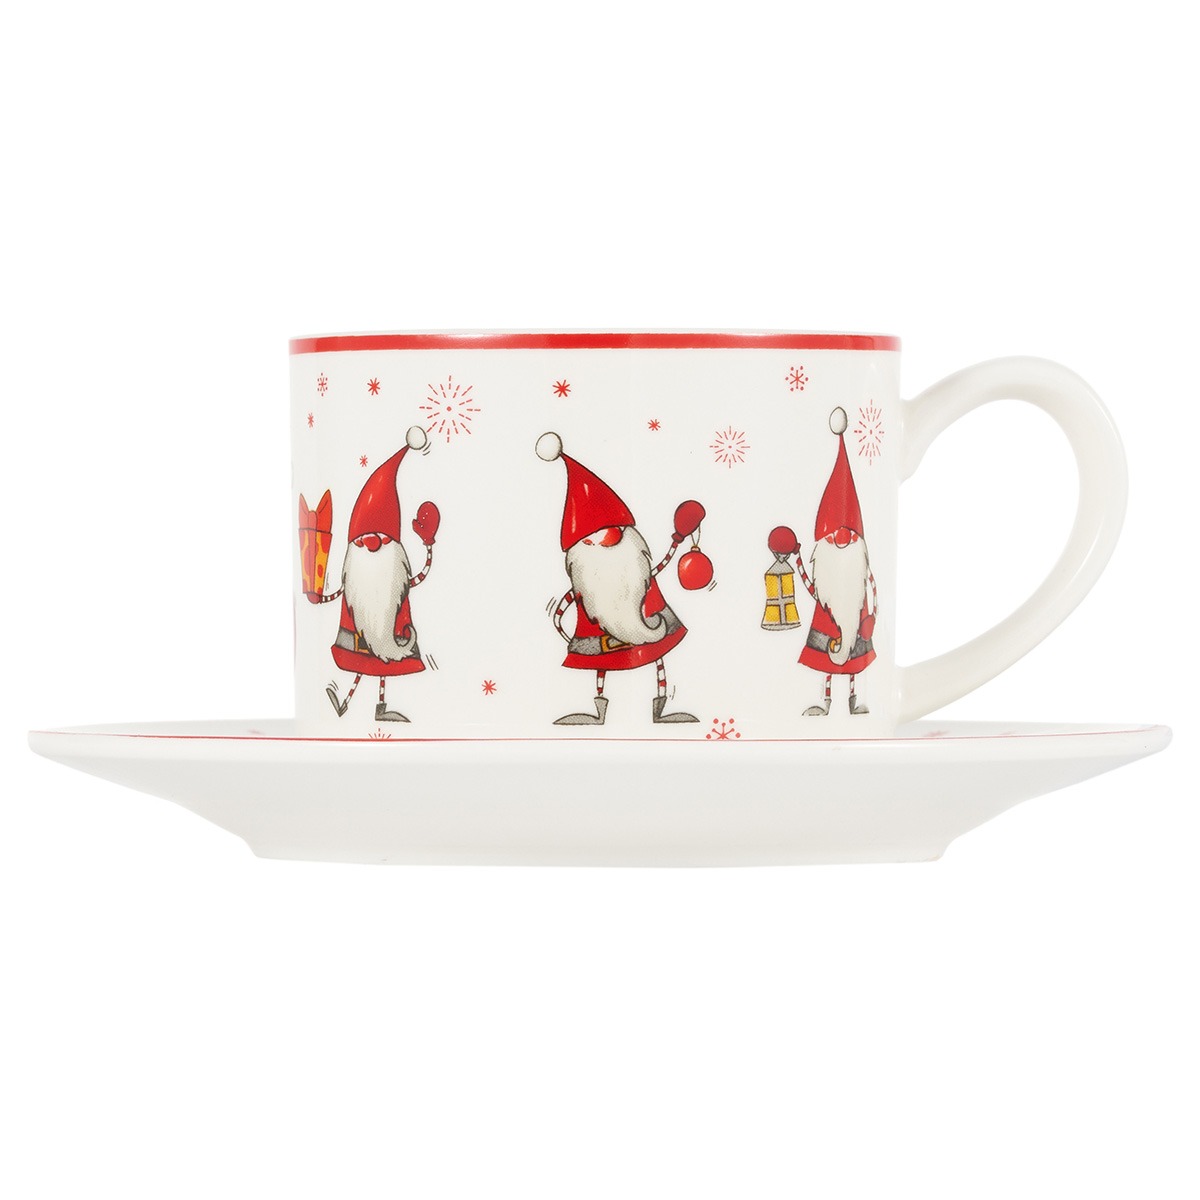 Чайная пара Gipfel Christmas фарфор белый с красным чашка 250 мл, блюдце 14 см, цвет красный - фото 3